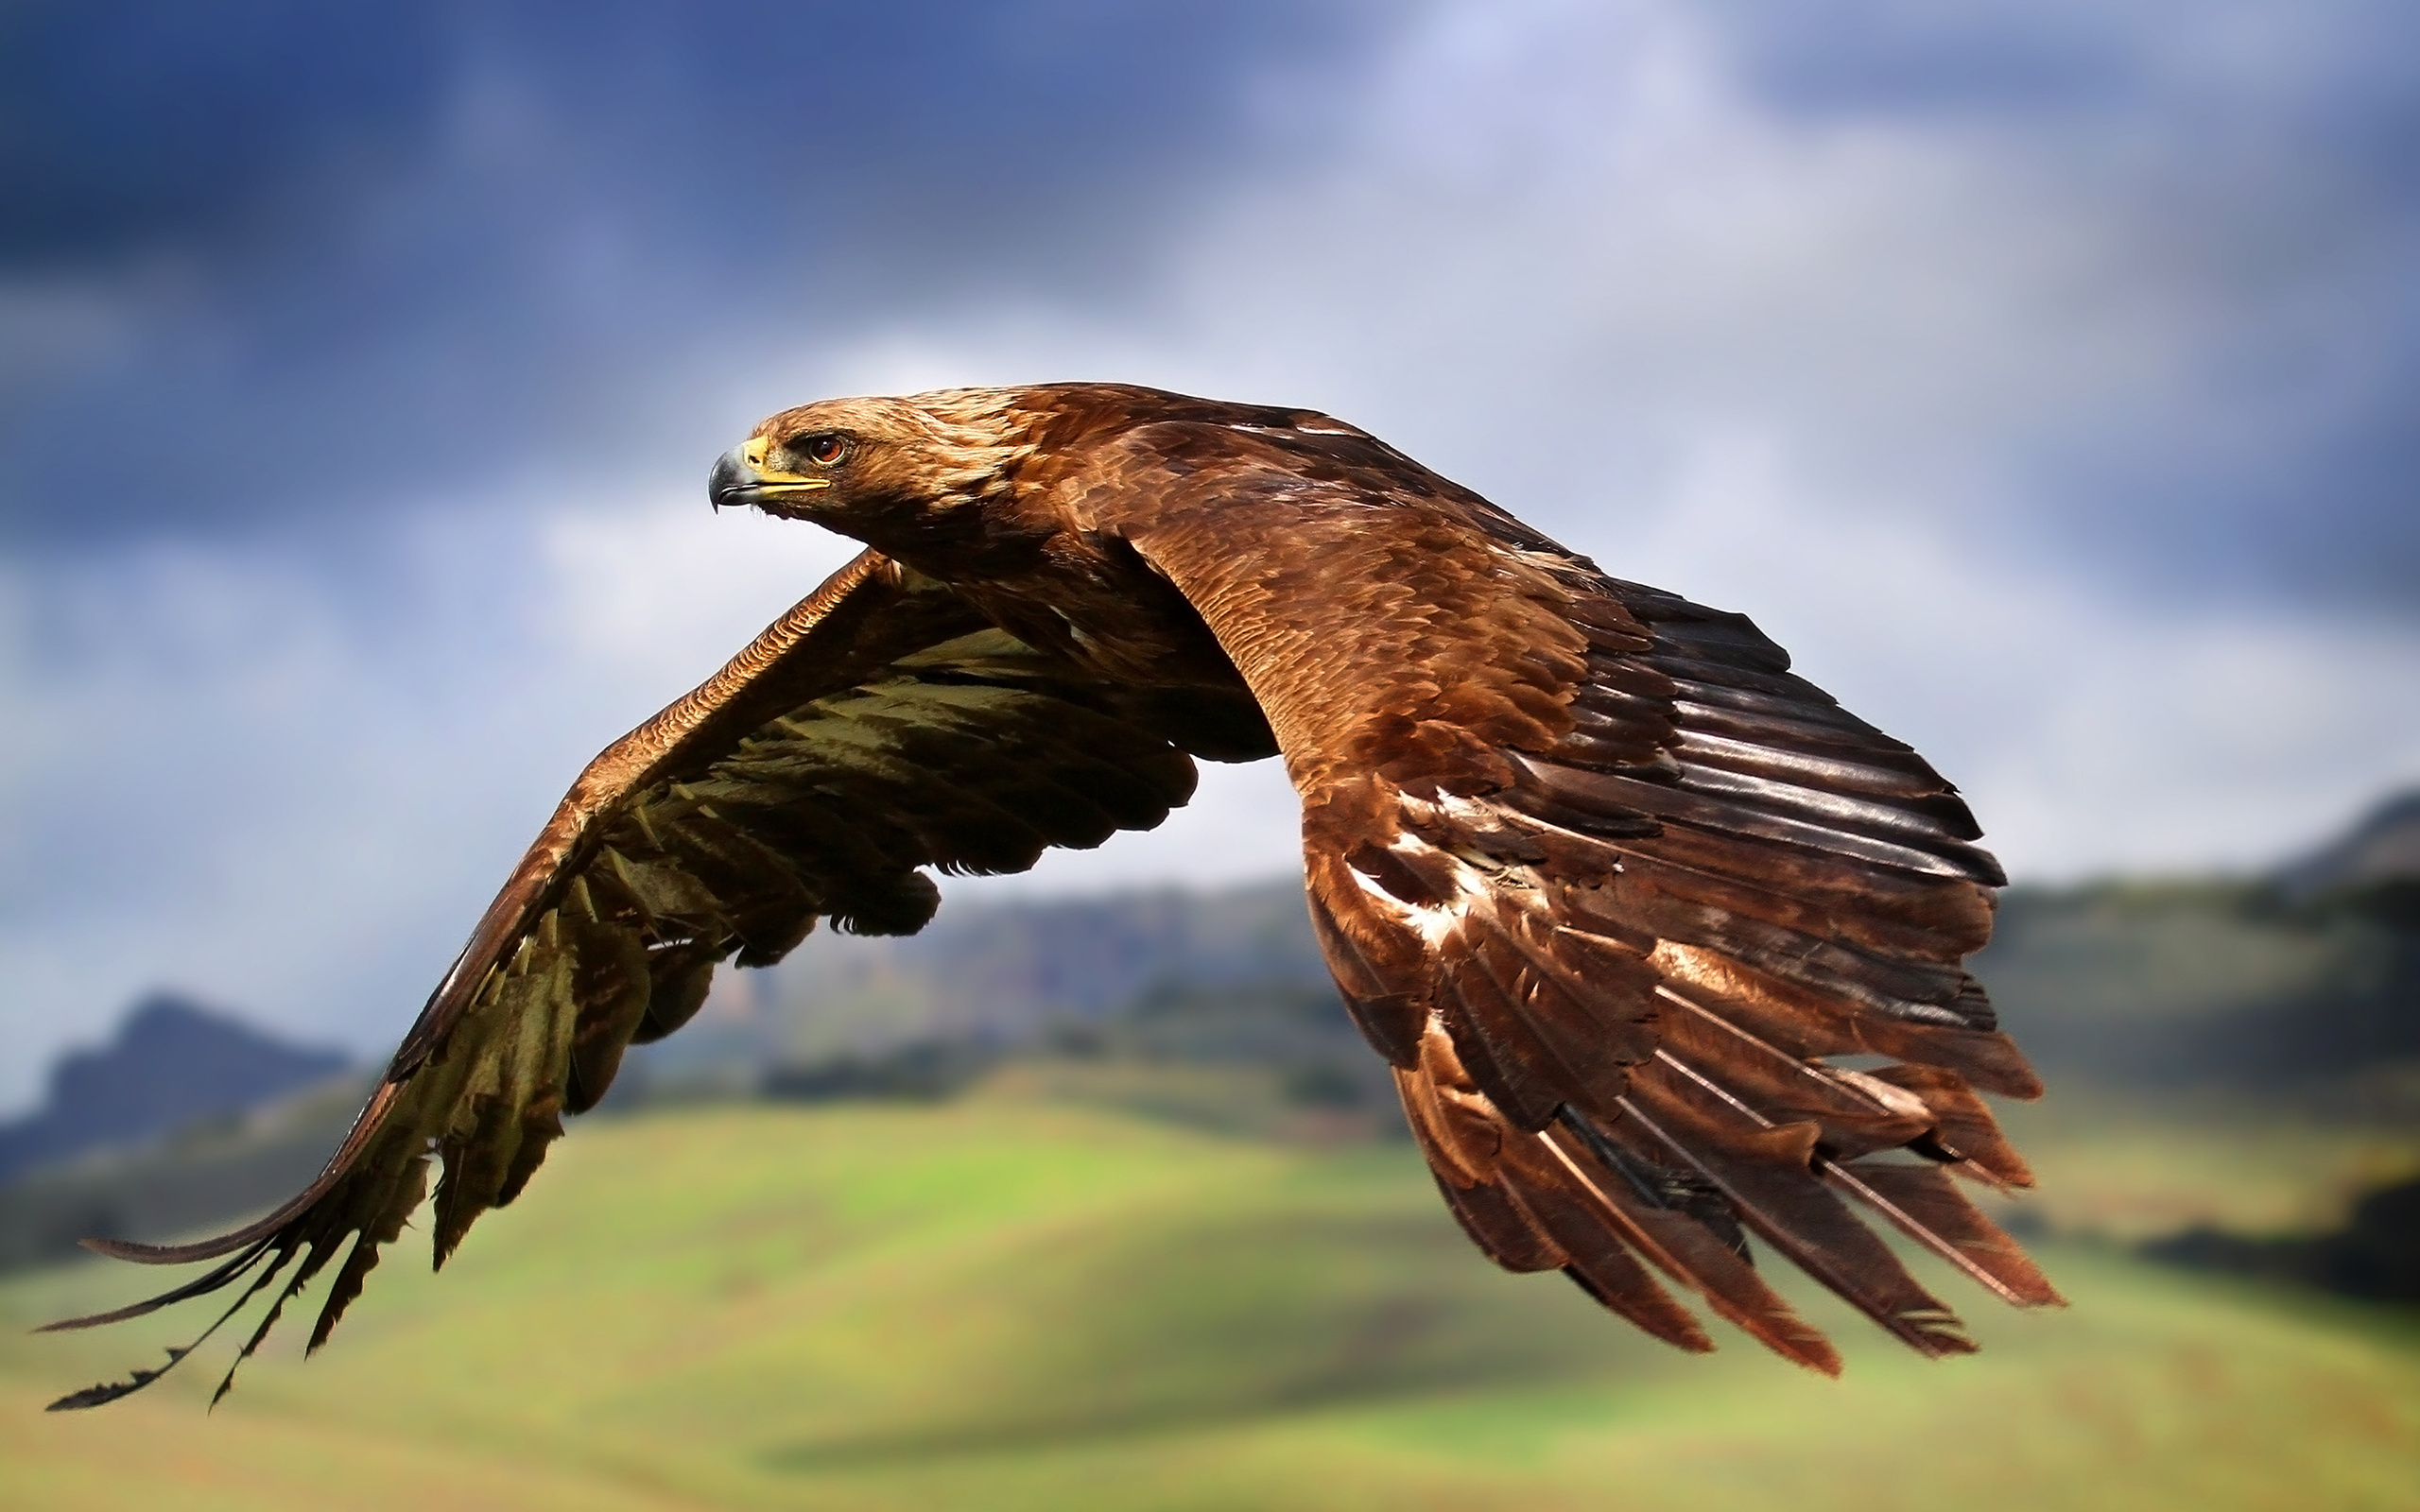 bird wallpaper brown eagle